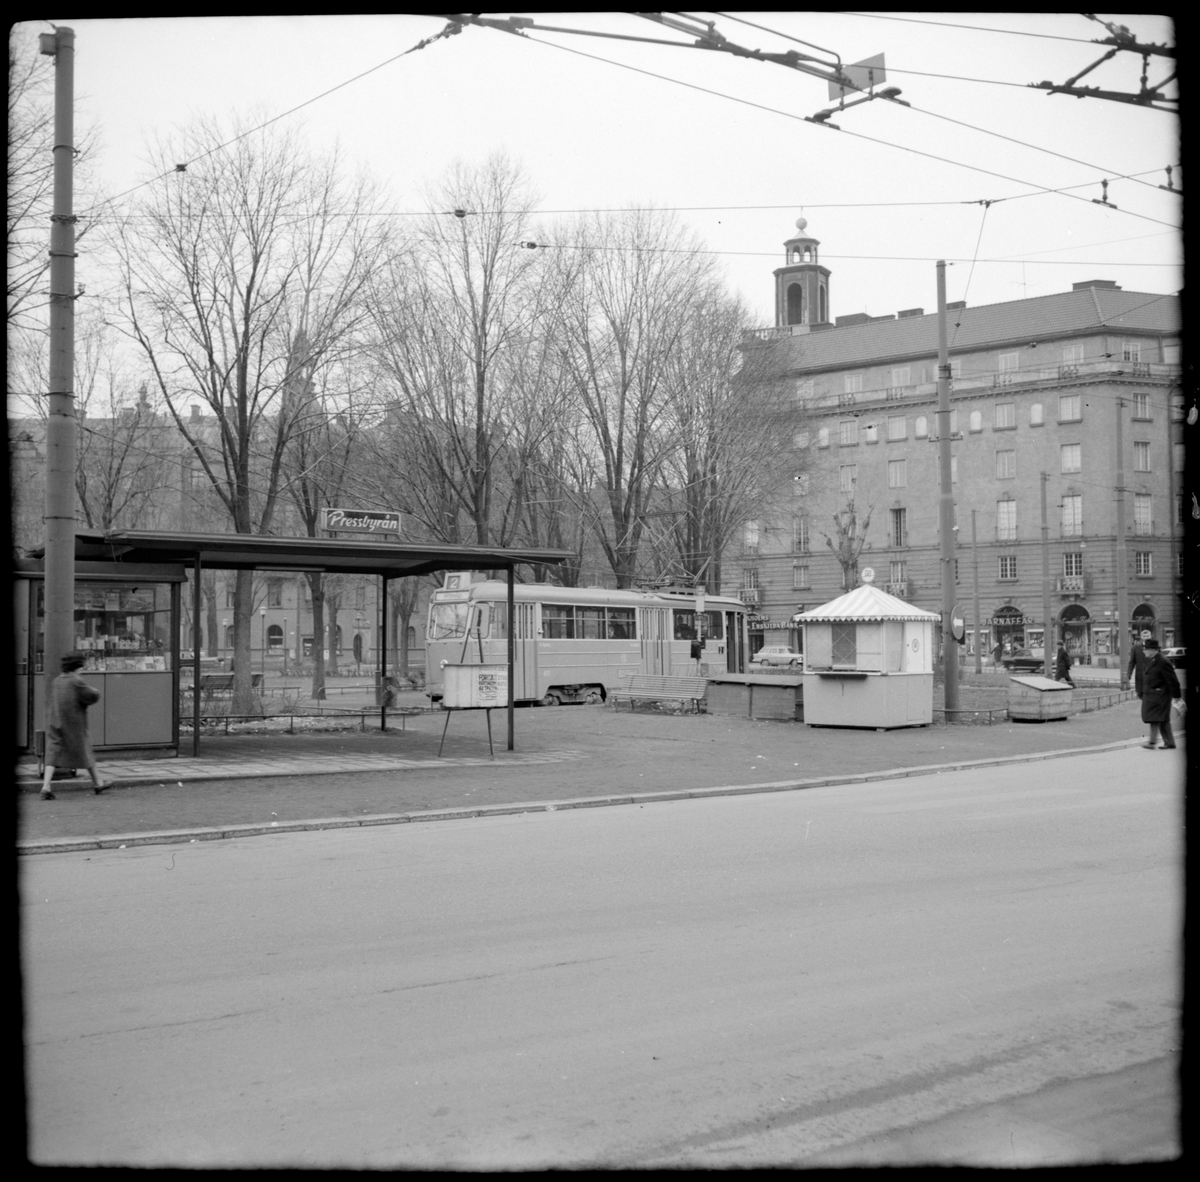 Aktiebolaget Stockholms Spårvägar, SS A26 471 "mustang" linje 2 Karlaplan - Fredhäll vid hållplats Karlaplan.